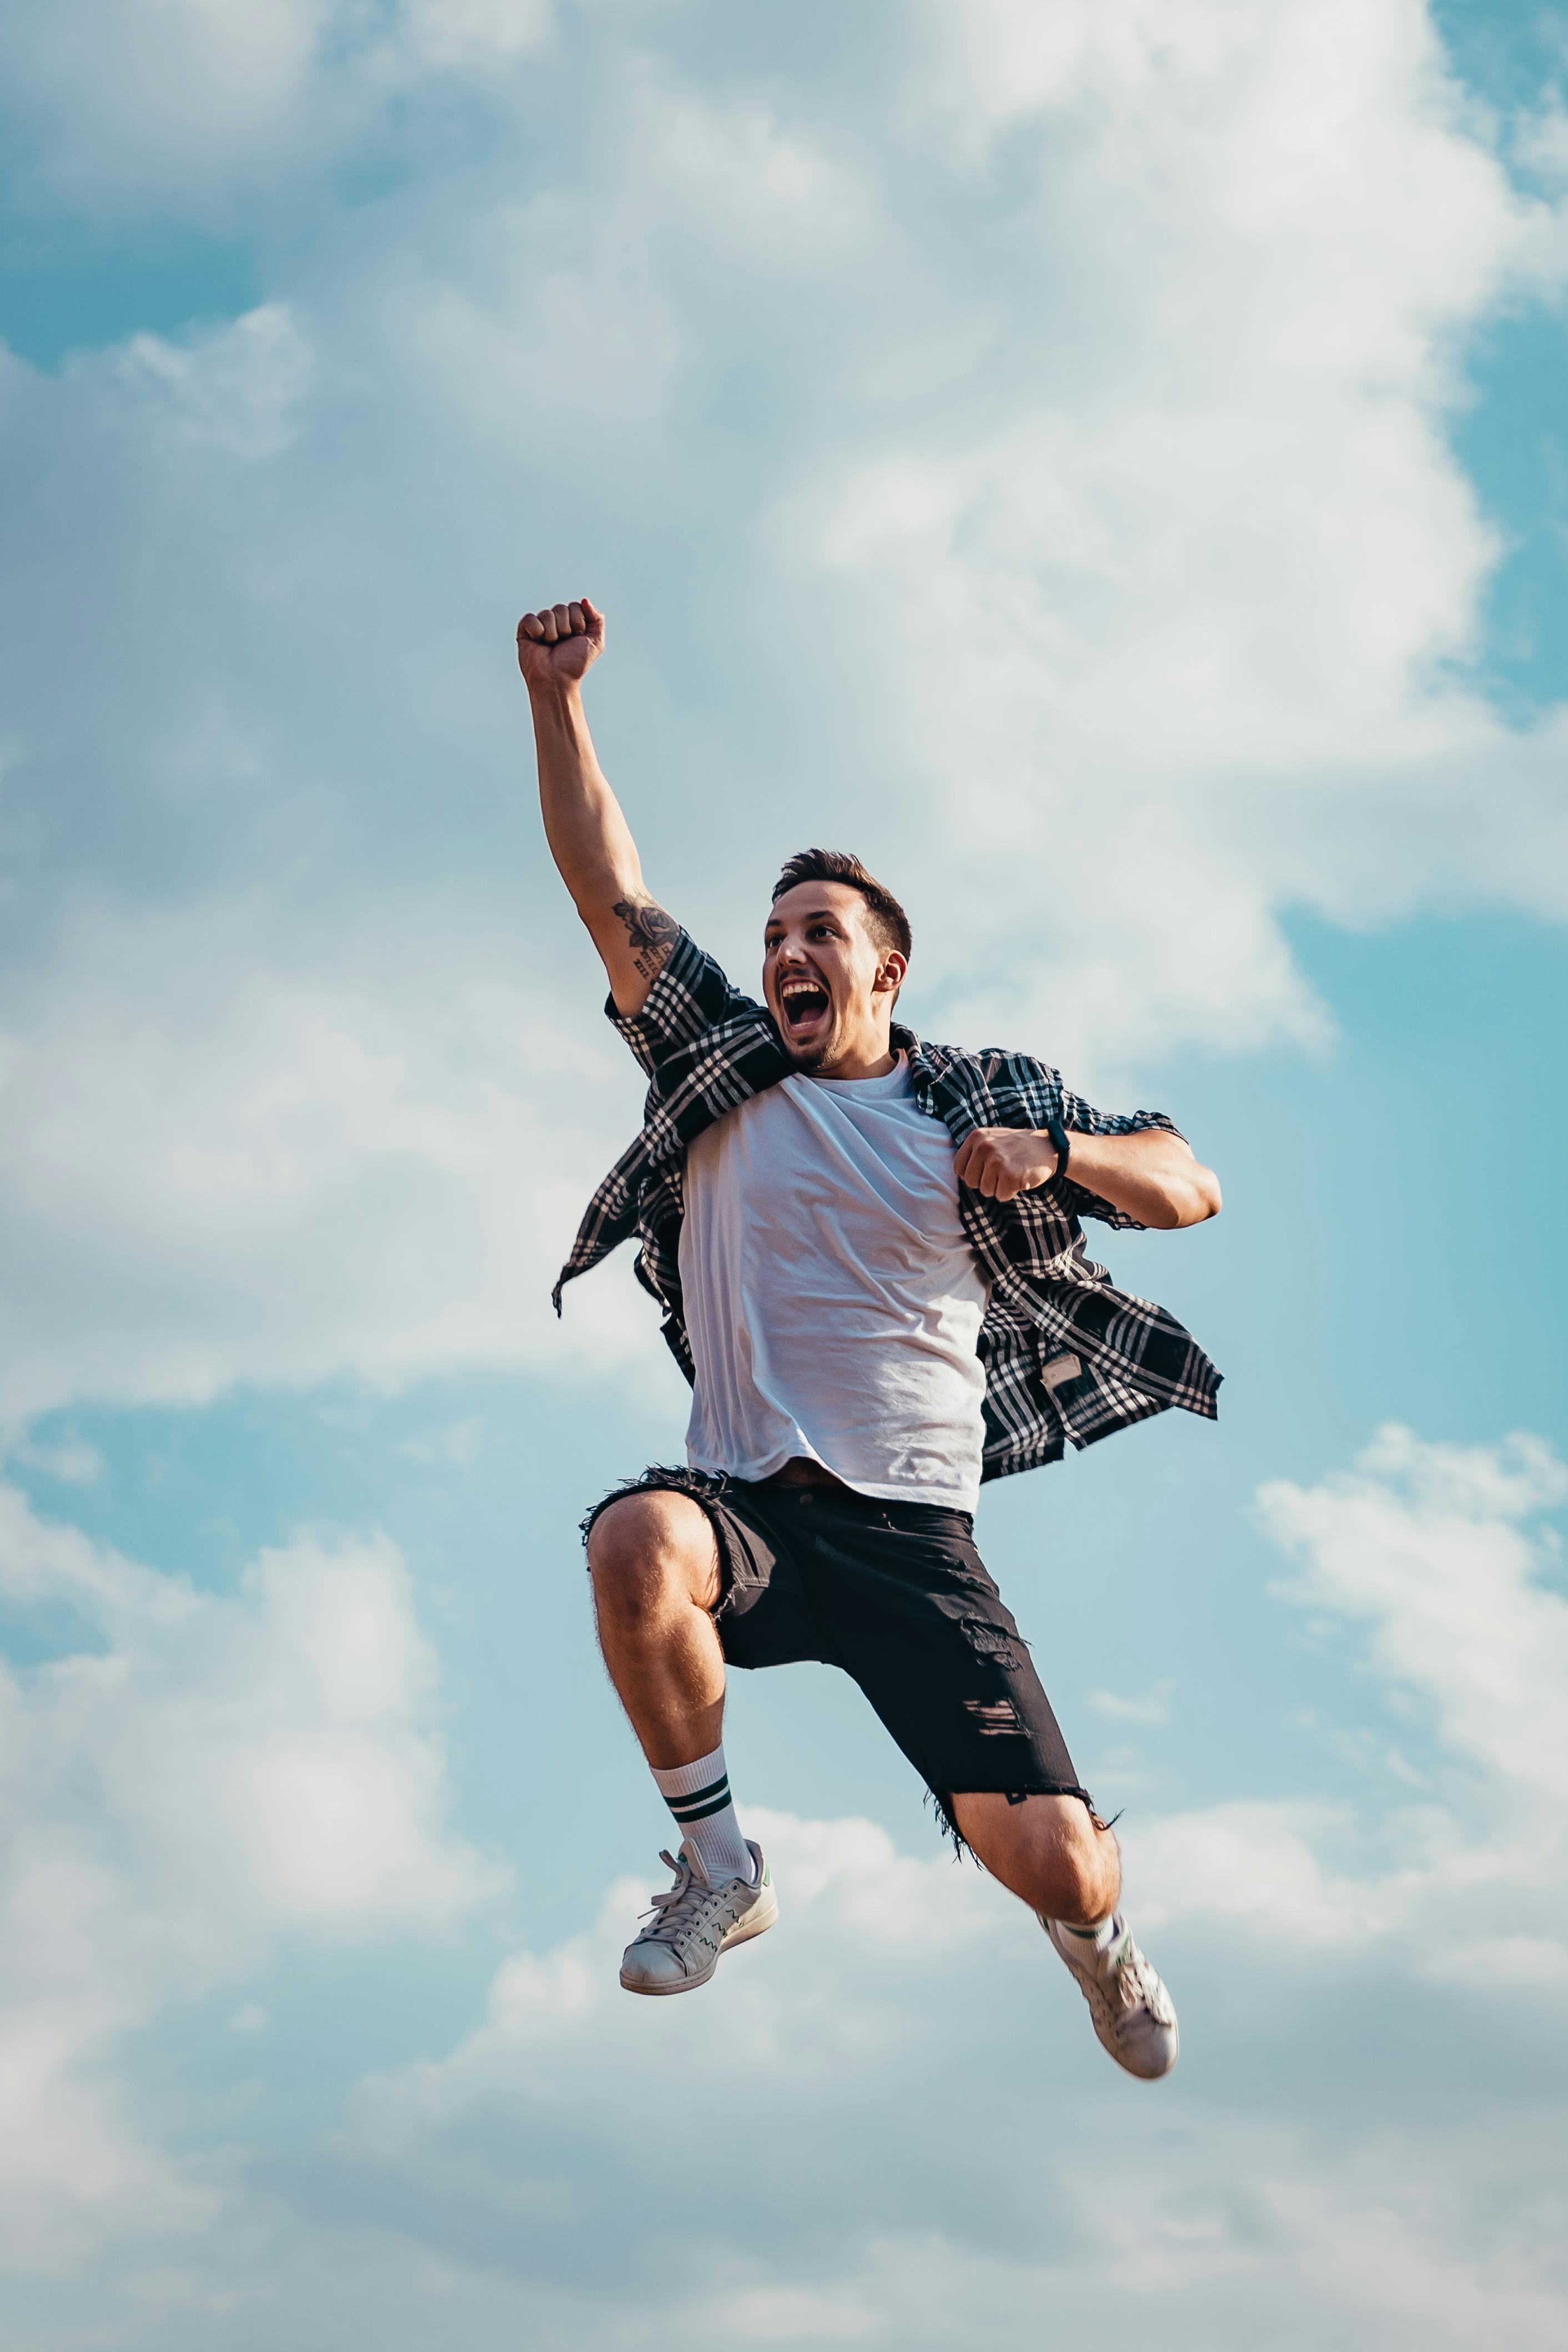 Ein freudig springender Mann | Quelle: Pexels